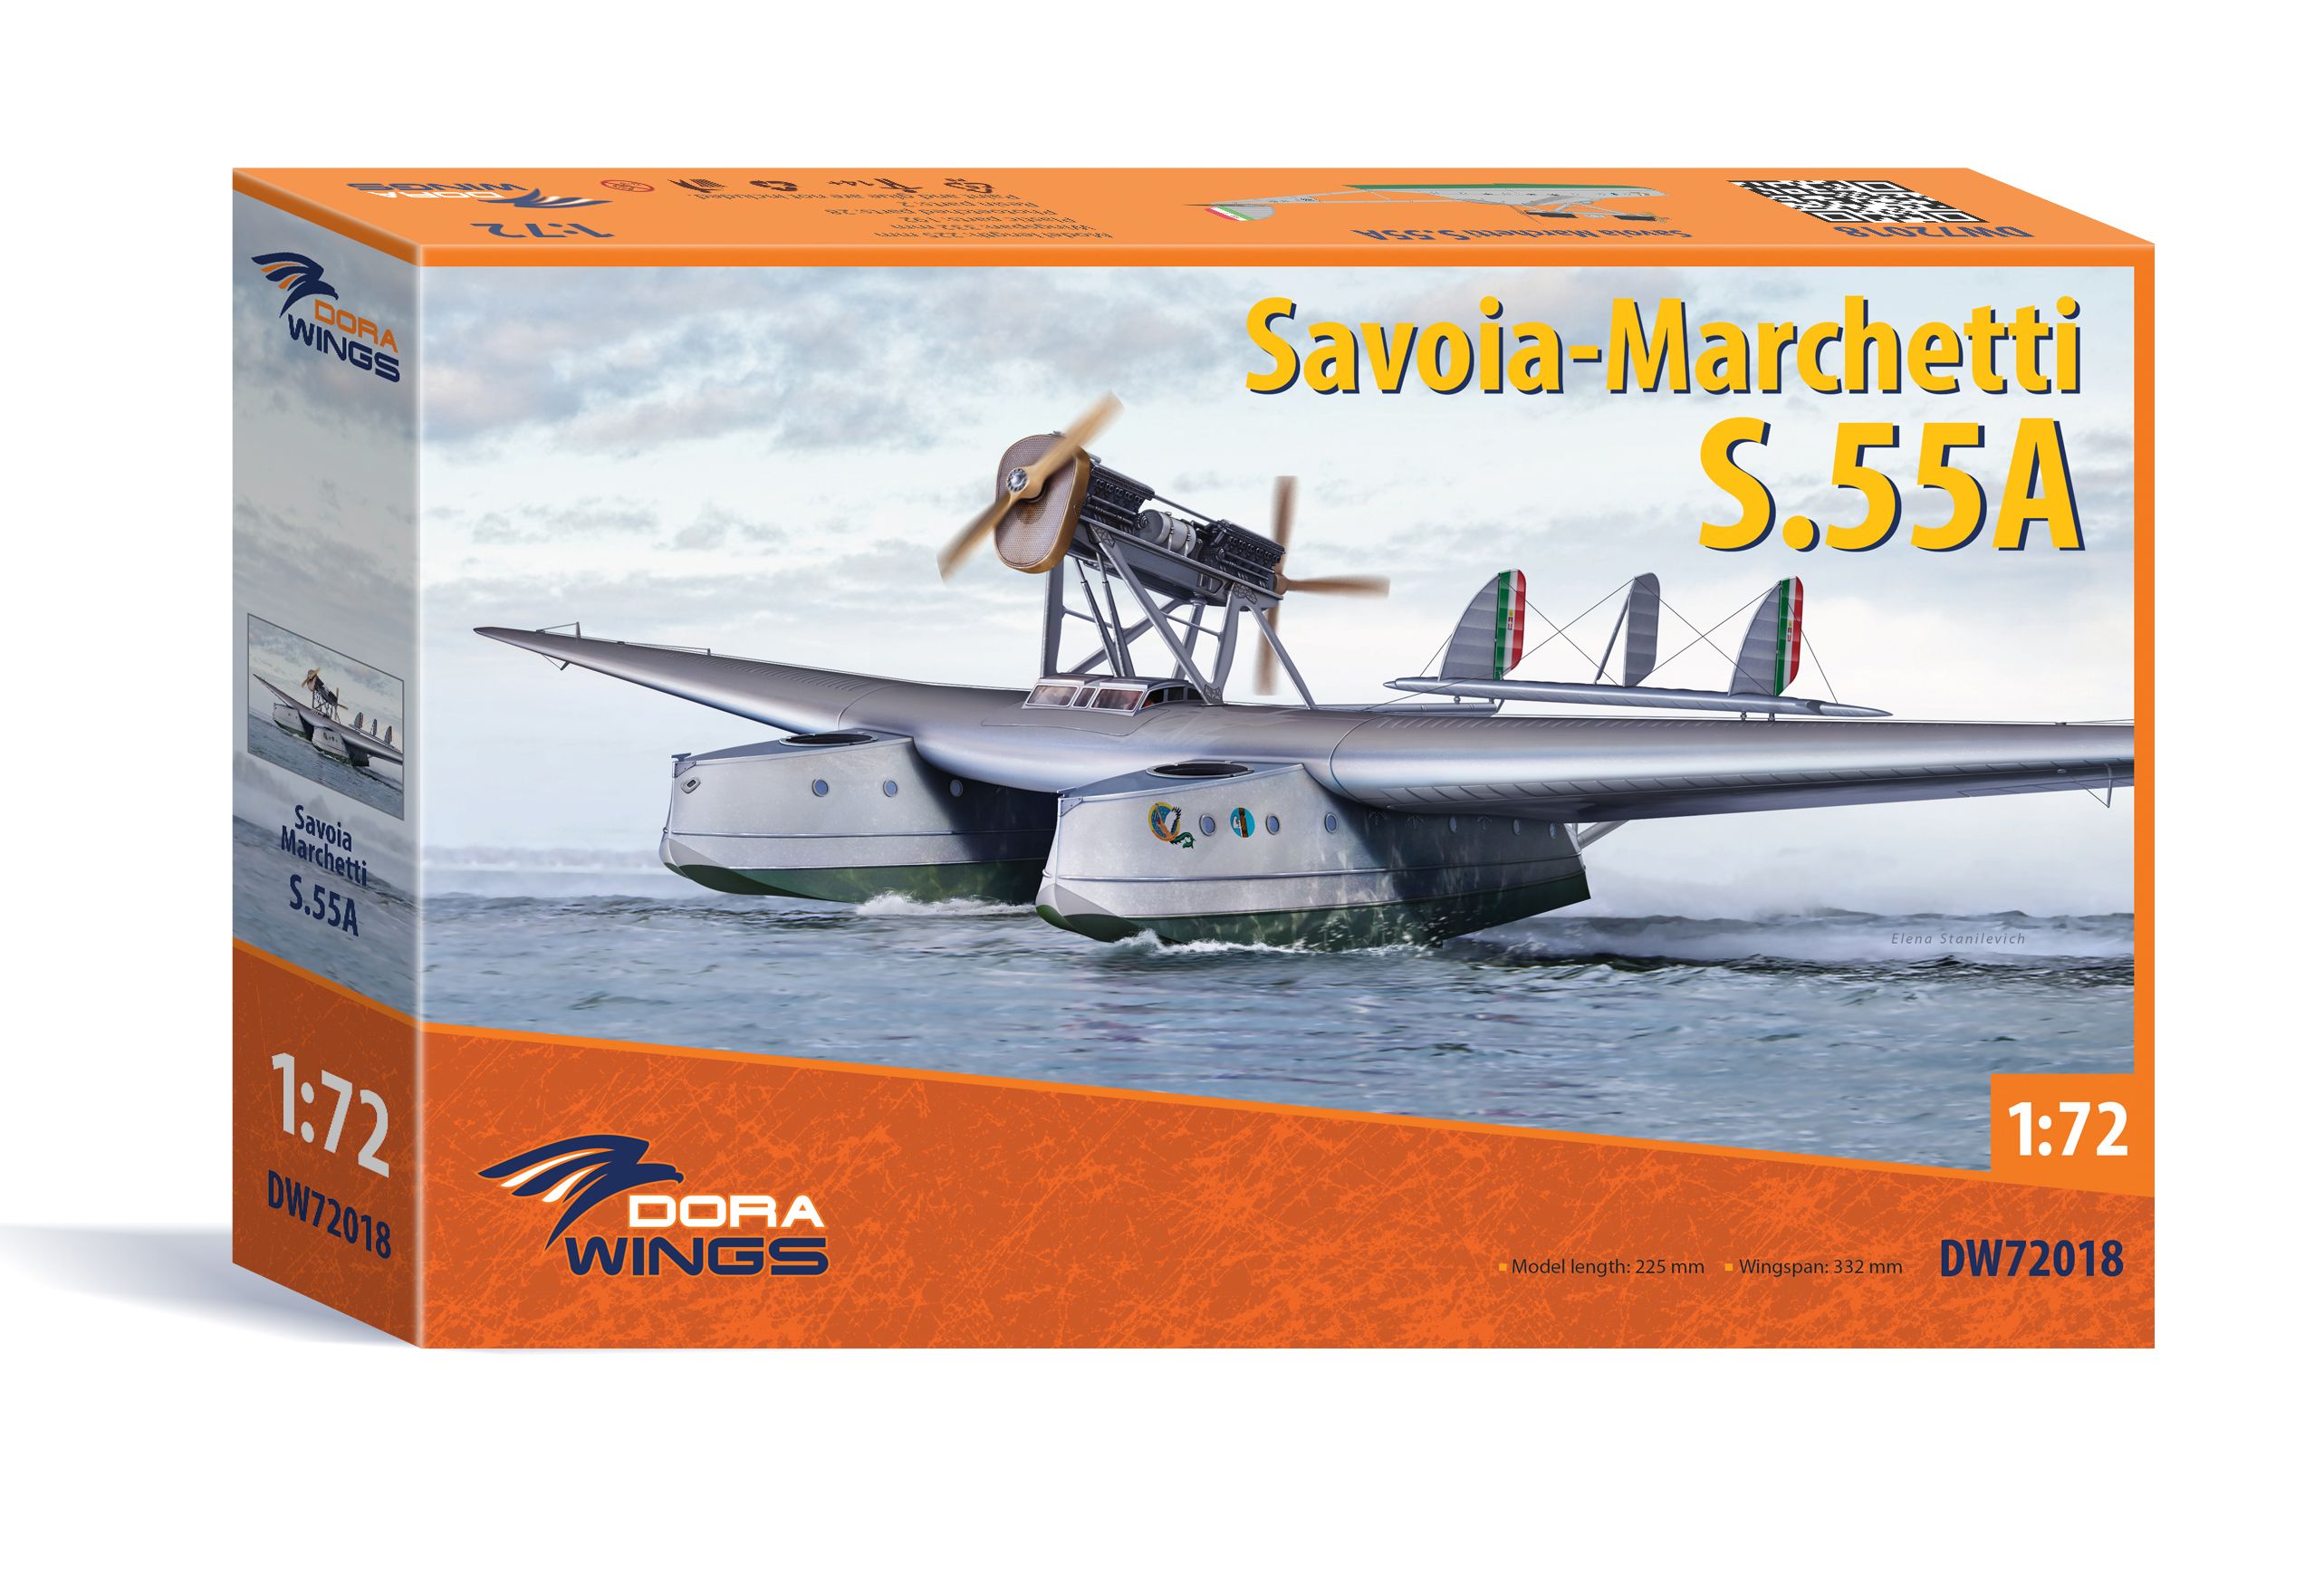 Savoya Marchettii S.55A (DW72018)